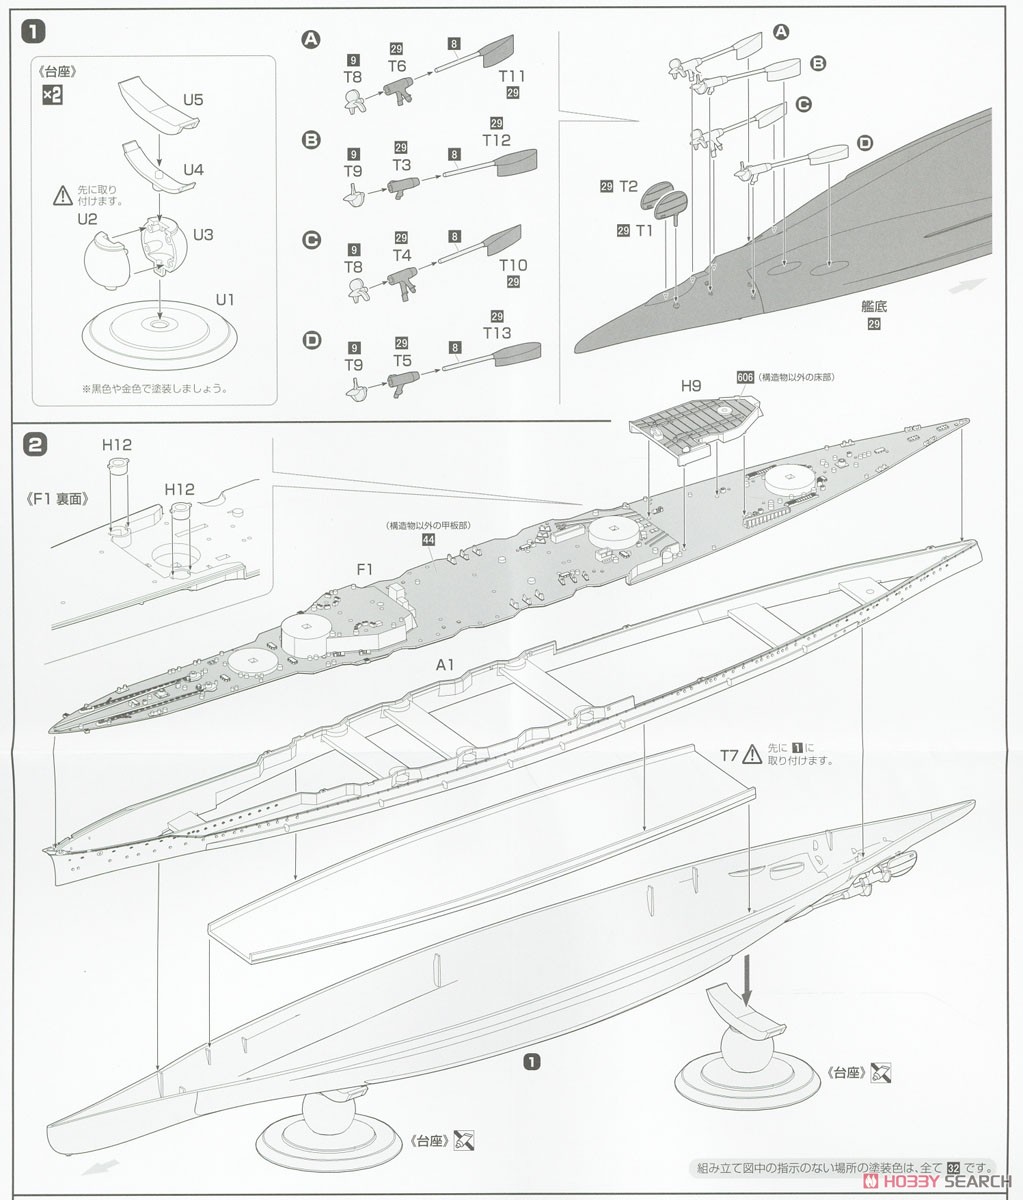 高速戦艦 榛名 フルハルモデル (プラモデル) 設計図1